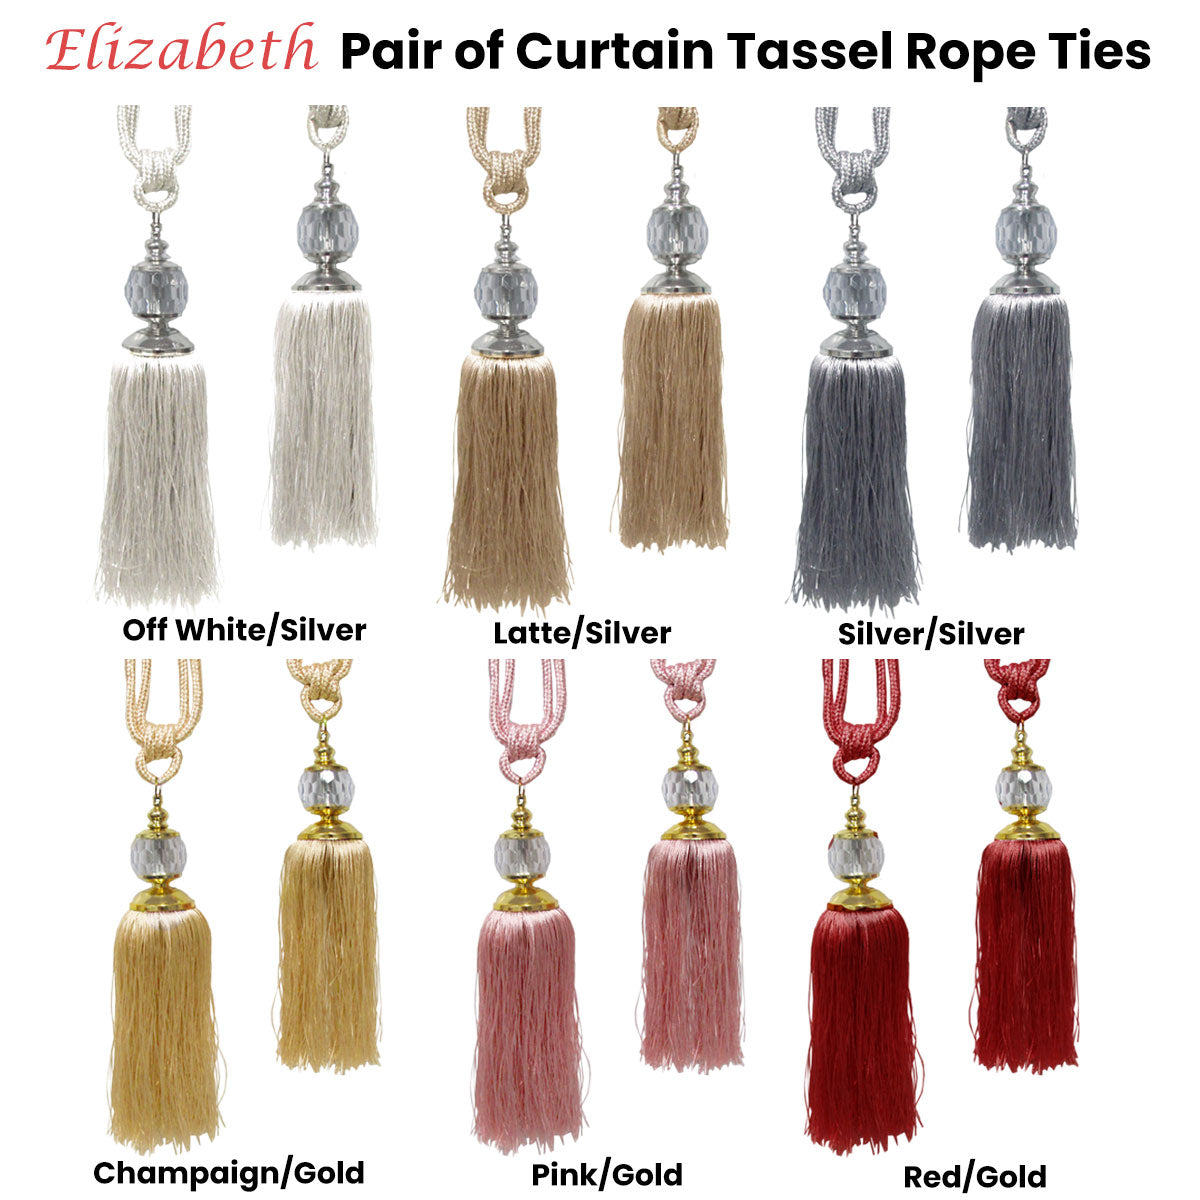 Elizabeth Pair of Curtain Tassel Rope Ties Latte/Silver - SILBERSHELL